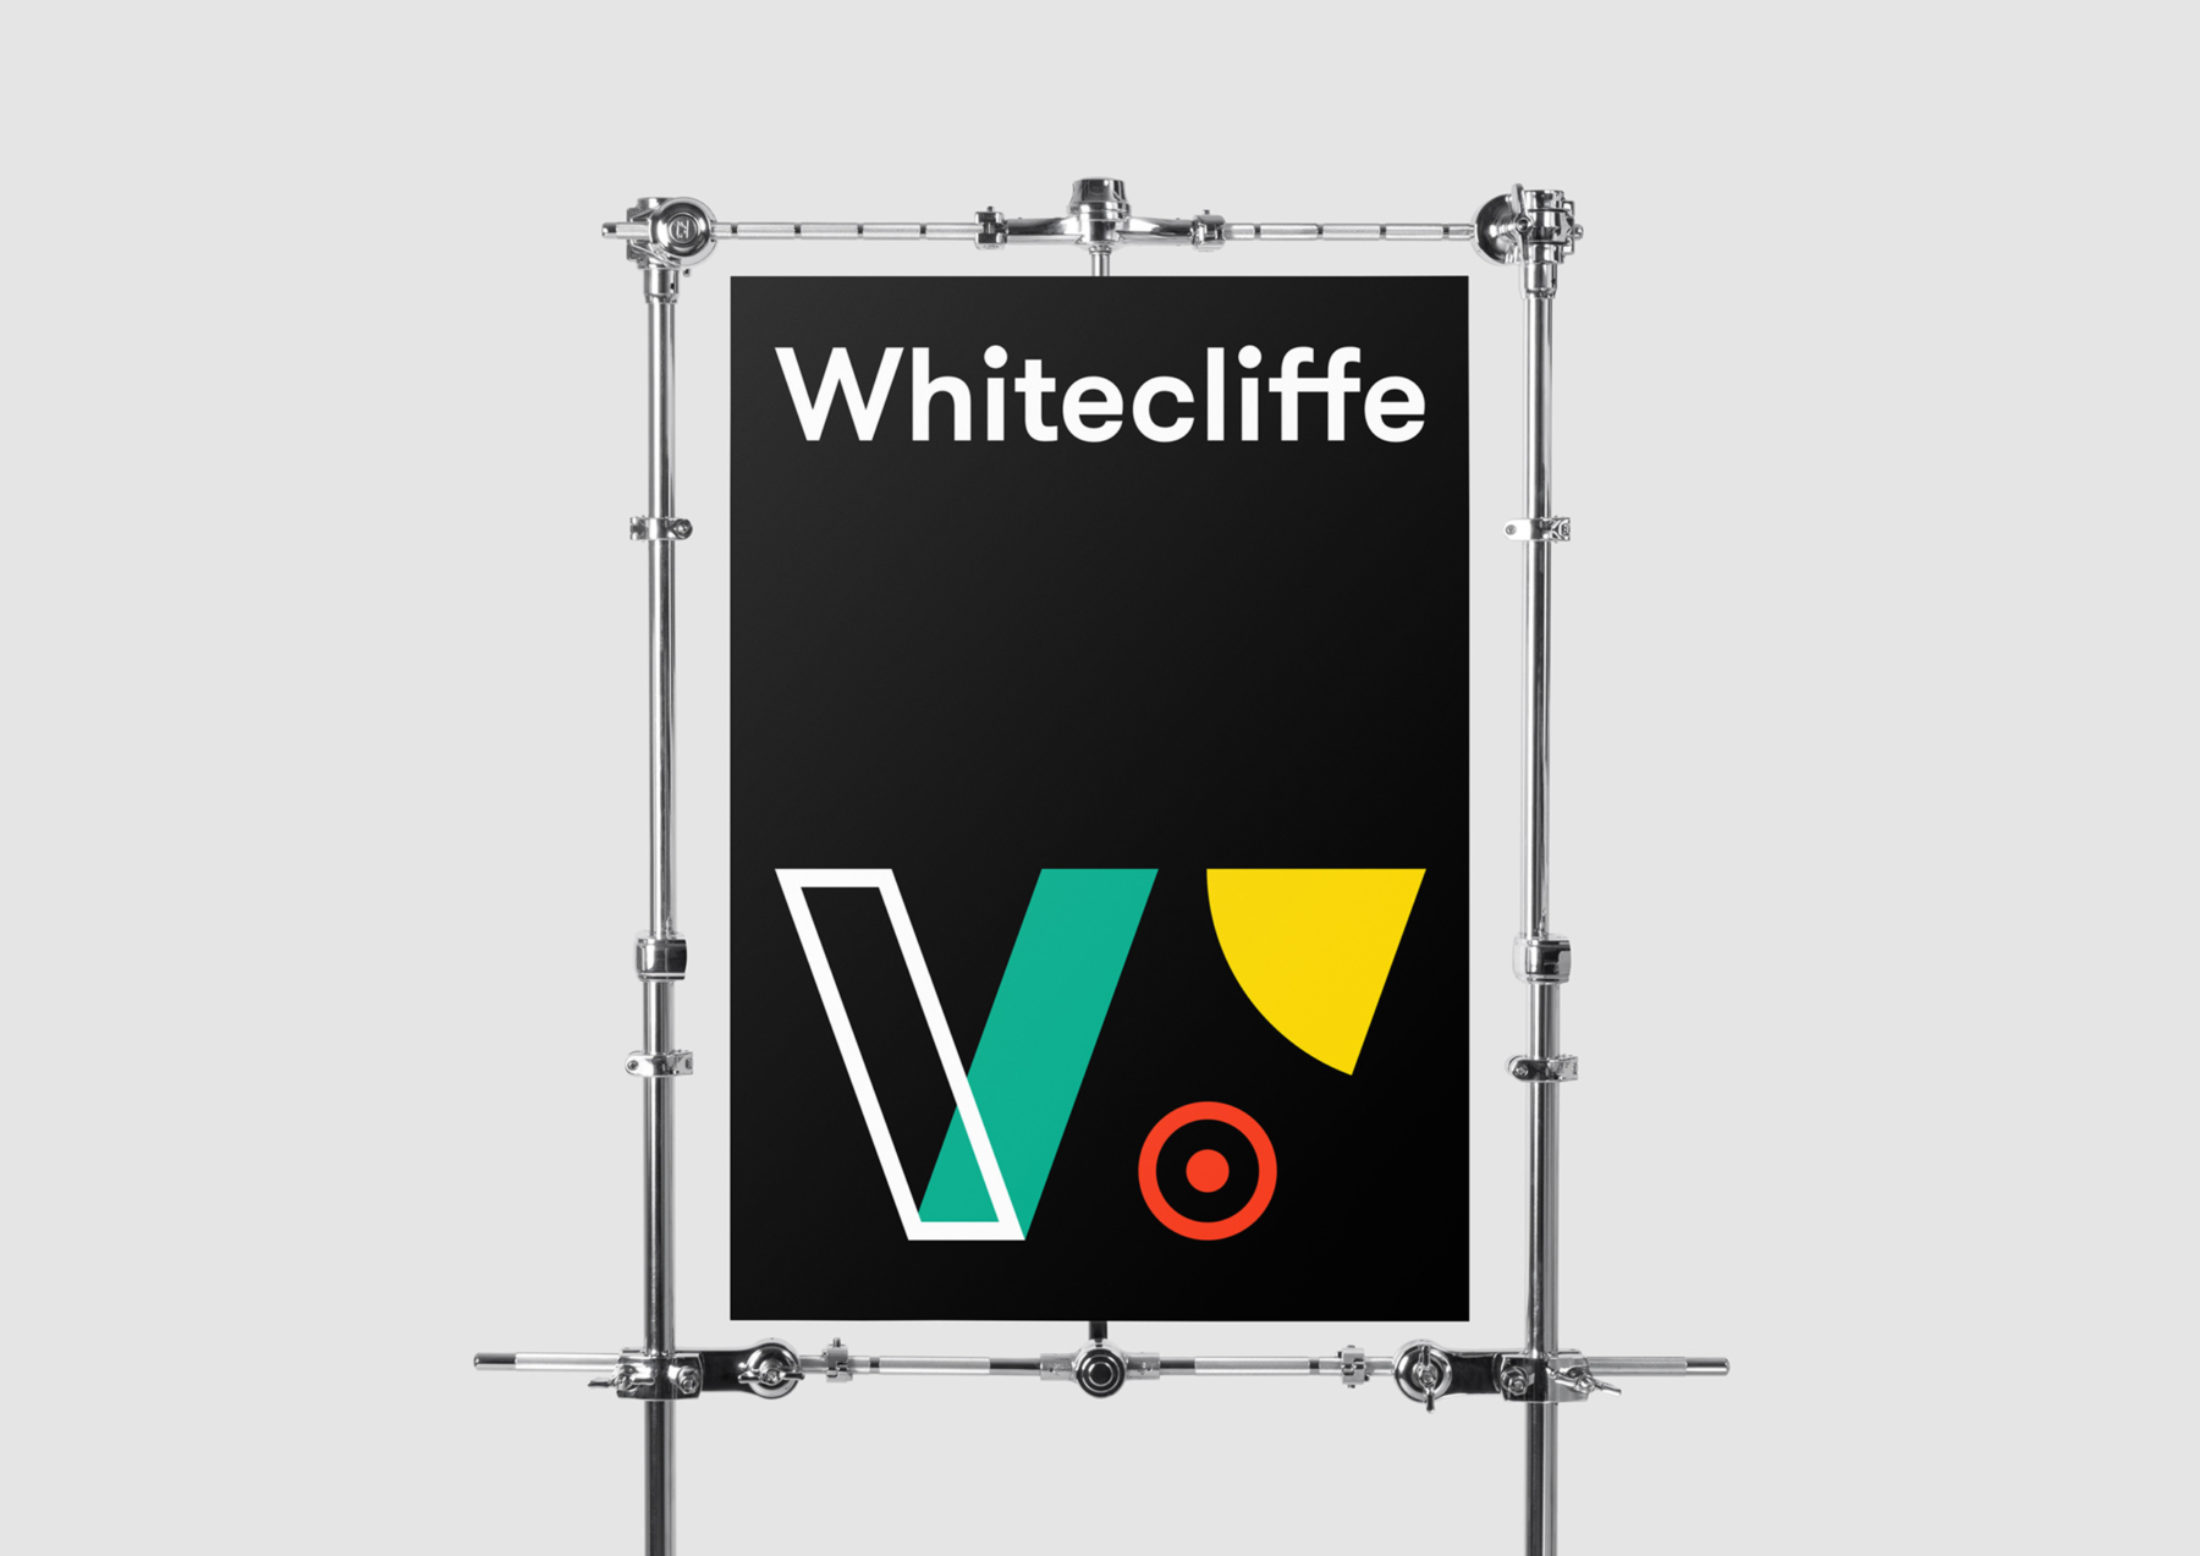 Whitecliffe brand